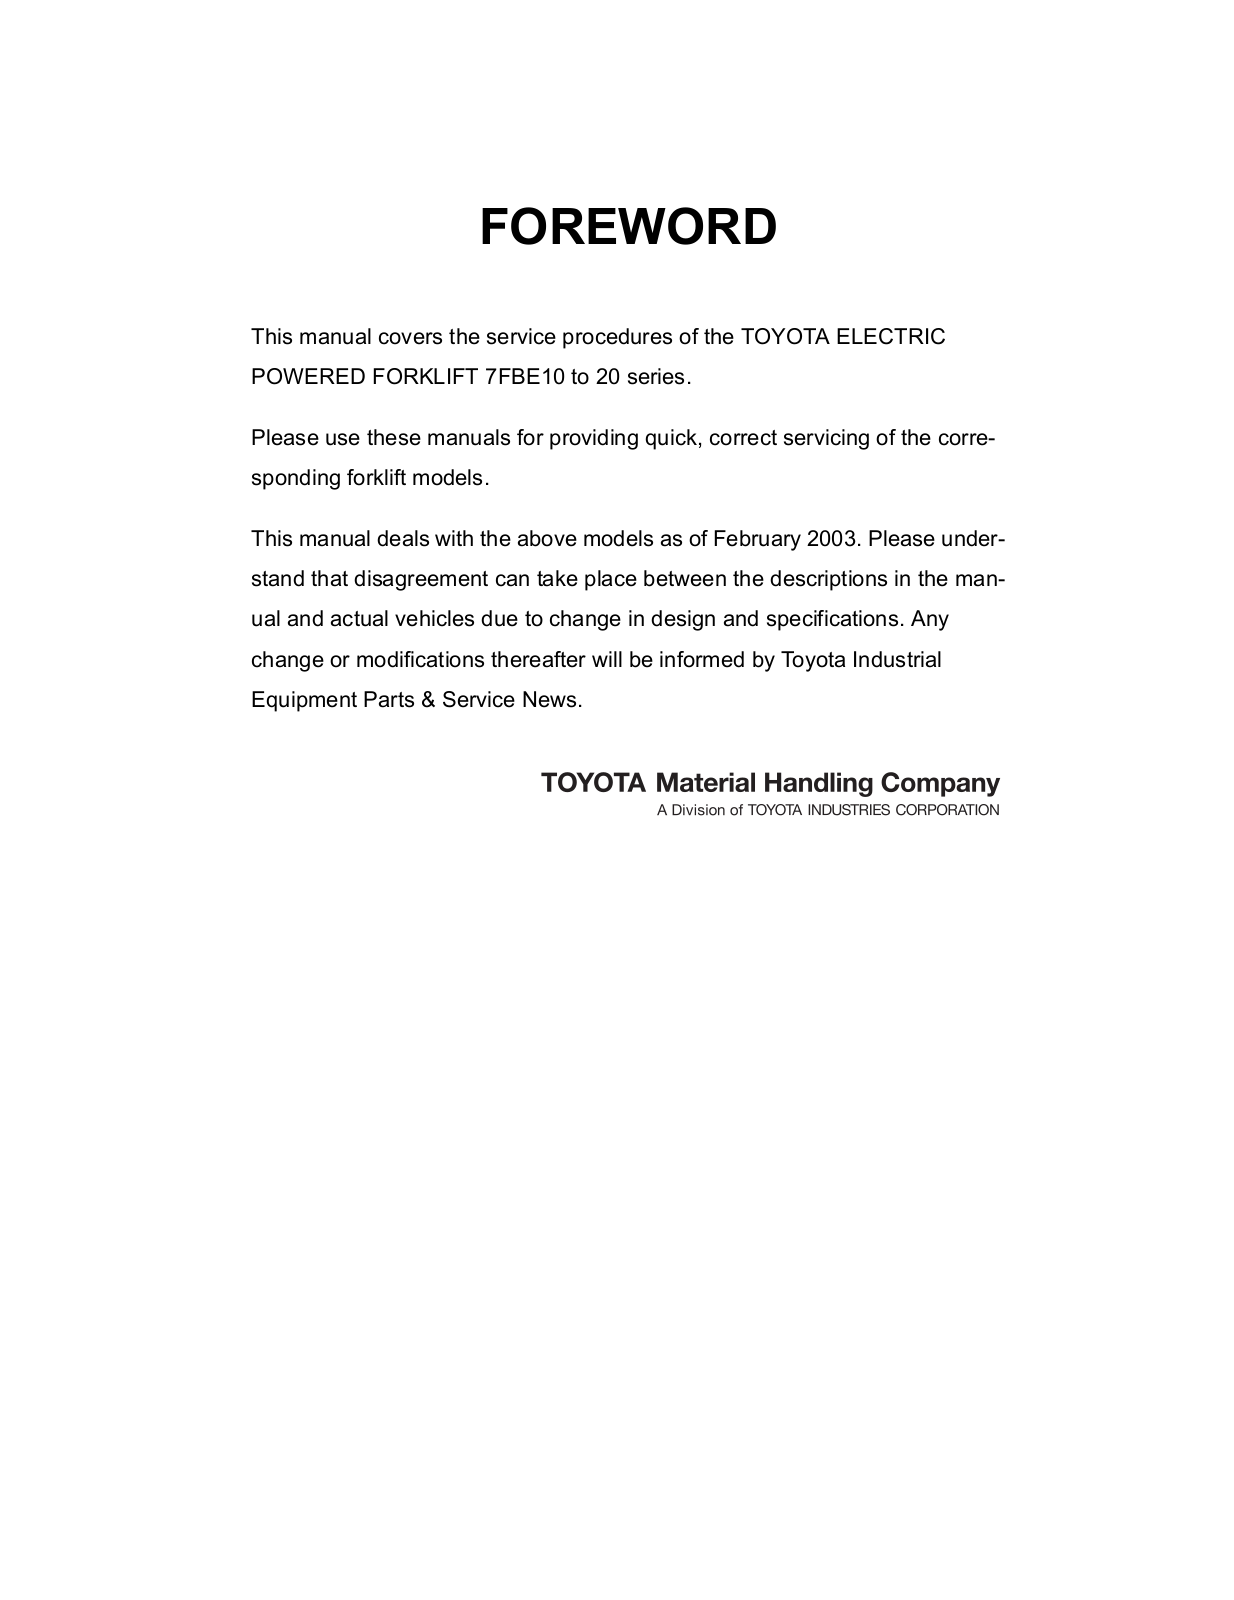 Toyota 7FBE10-20 Repair Manual